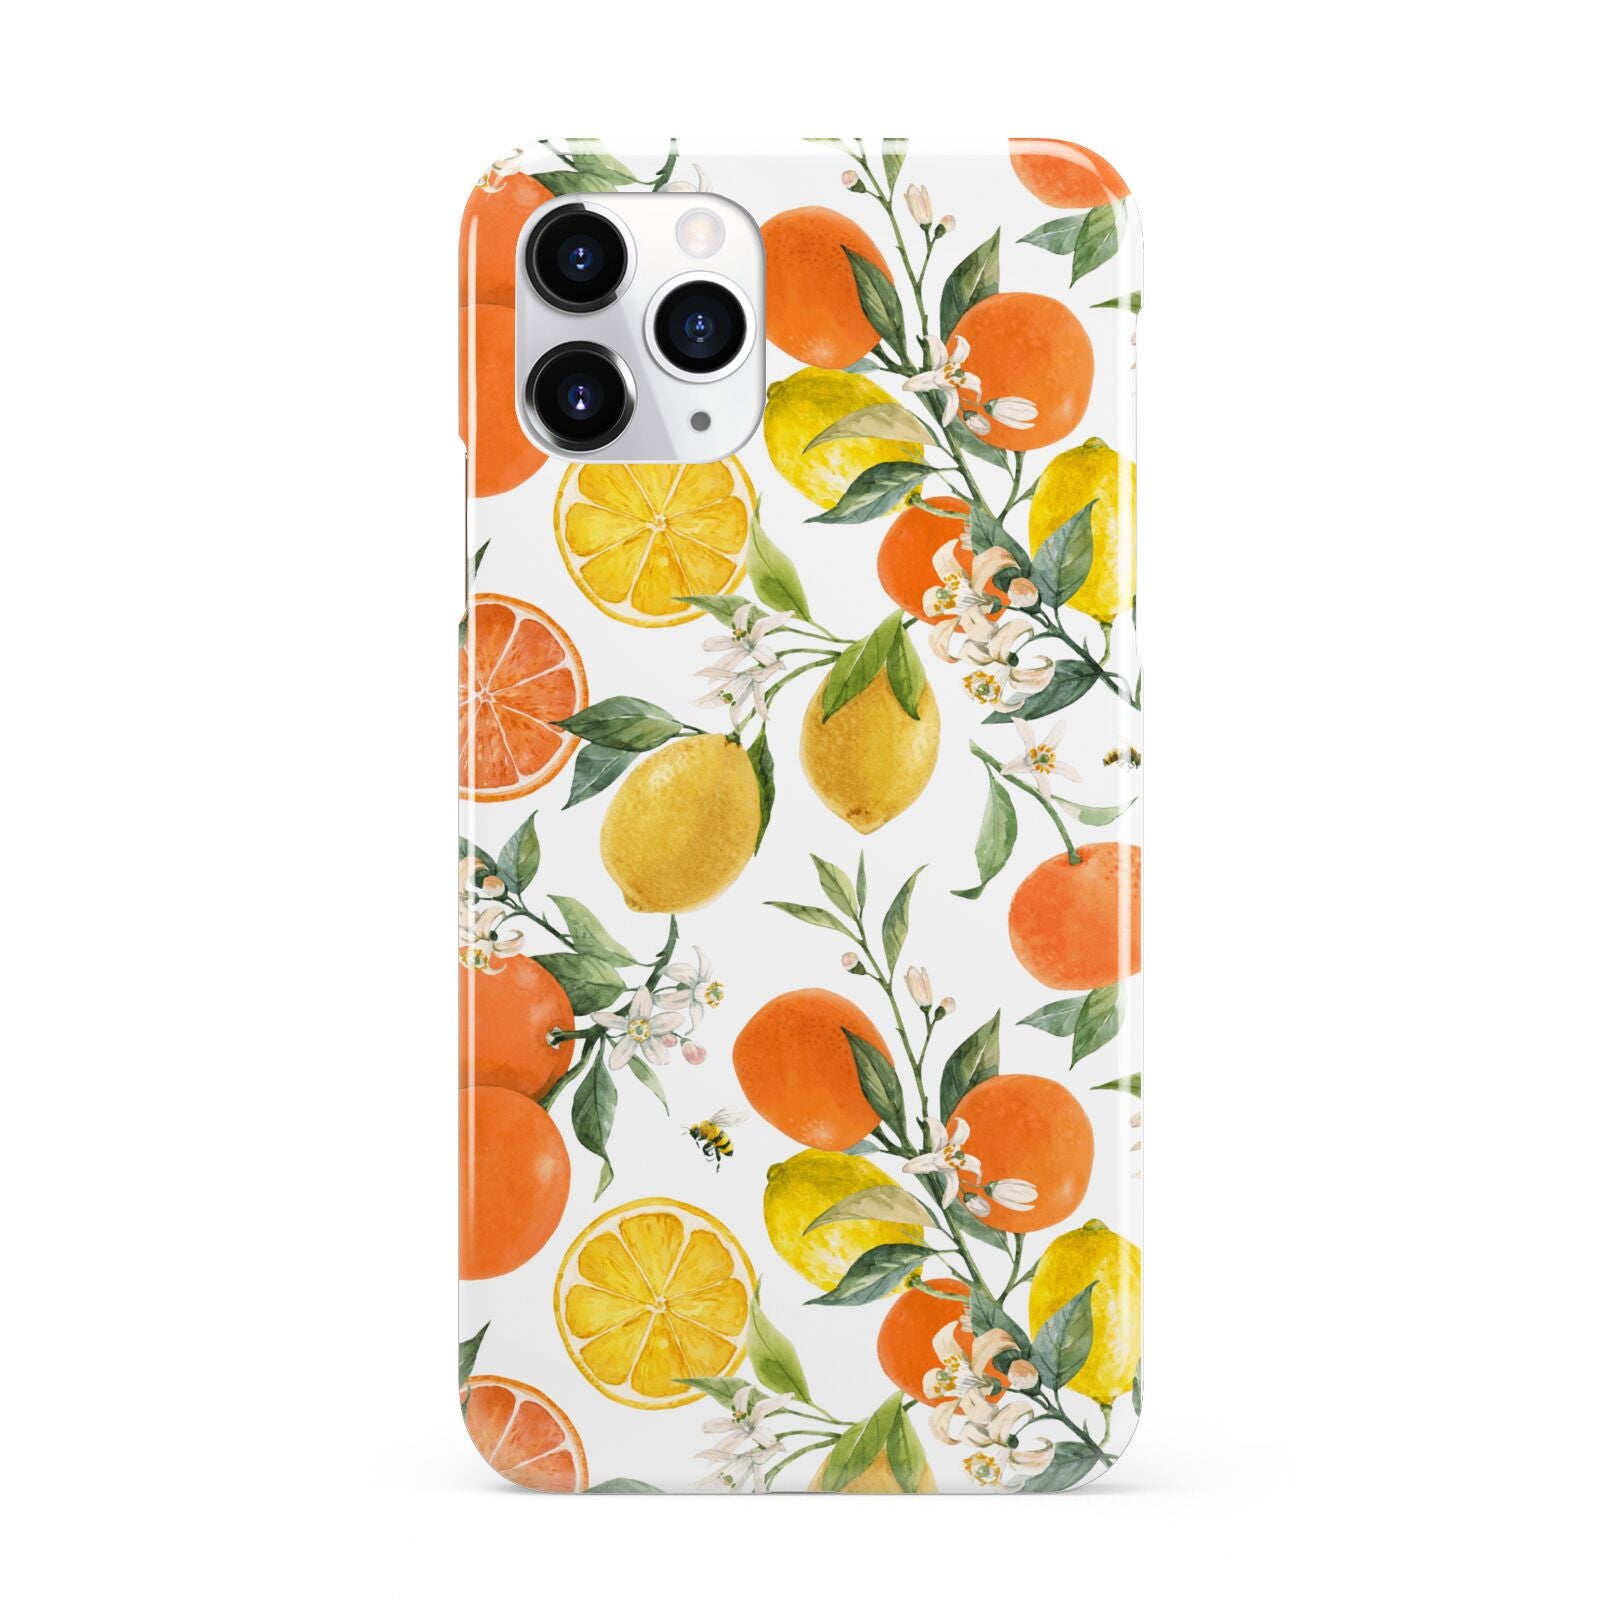 Lemons and Oranges iPhone 11 Pro 3D Snap Case